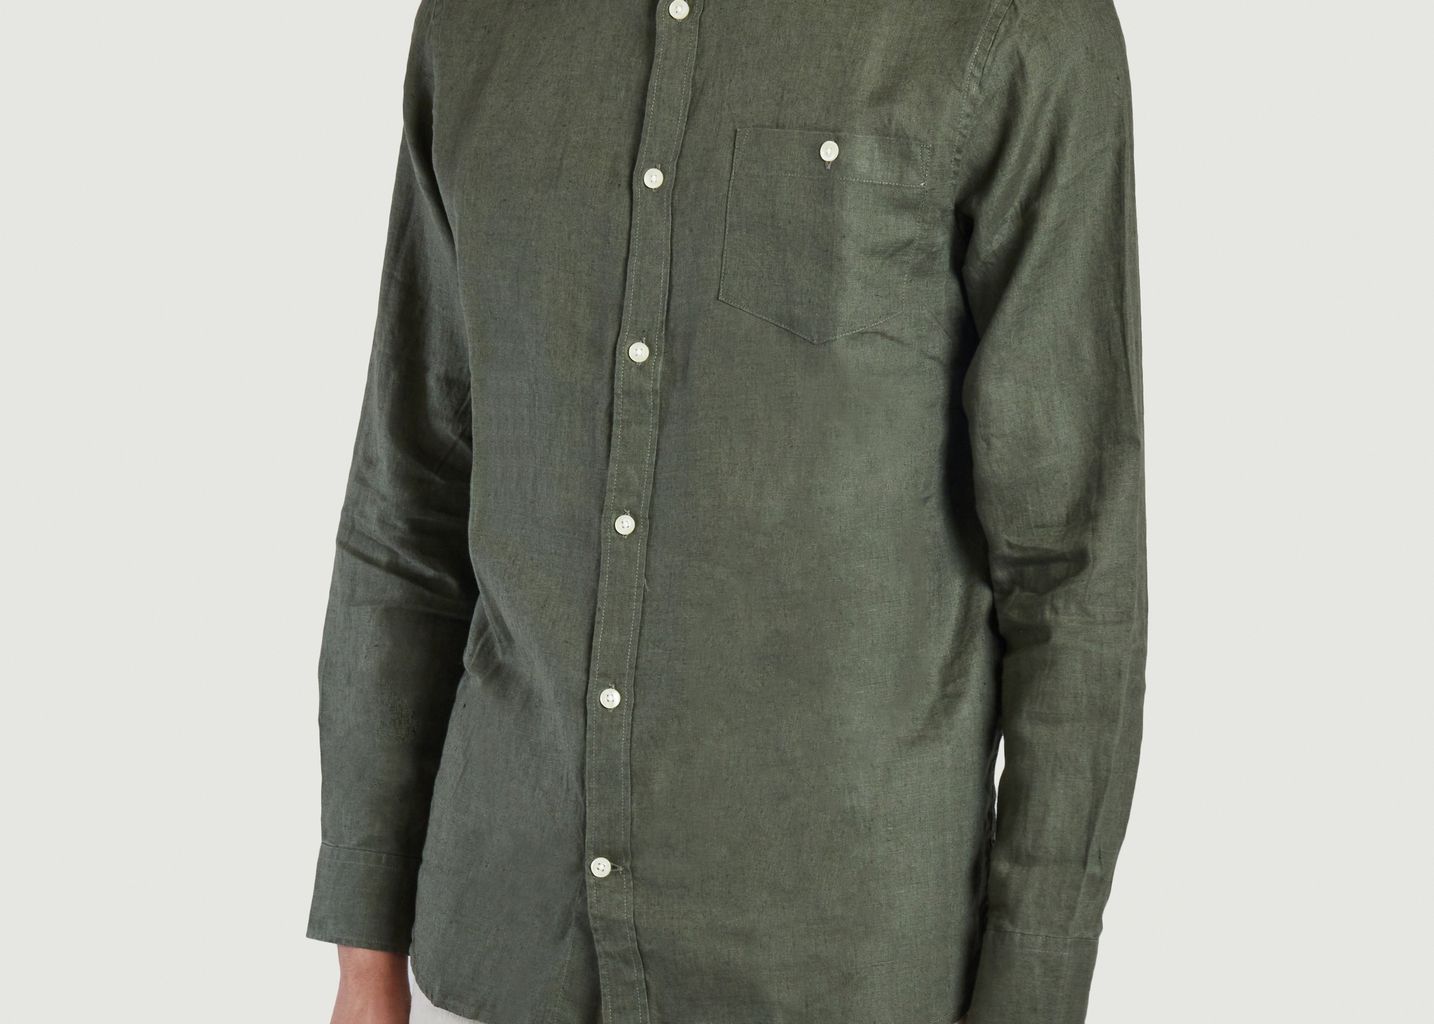 Custom fit linen shirt - KCA